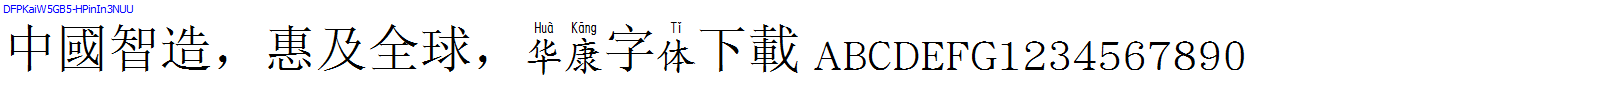 華康字體DFPKaiW5GB5-HPinIn3NUU.TTF